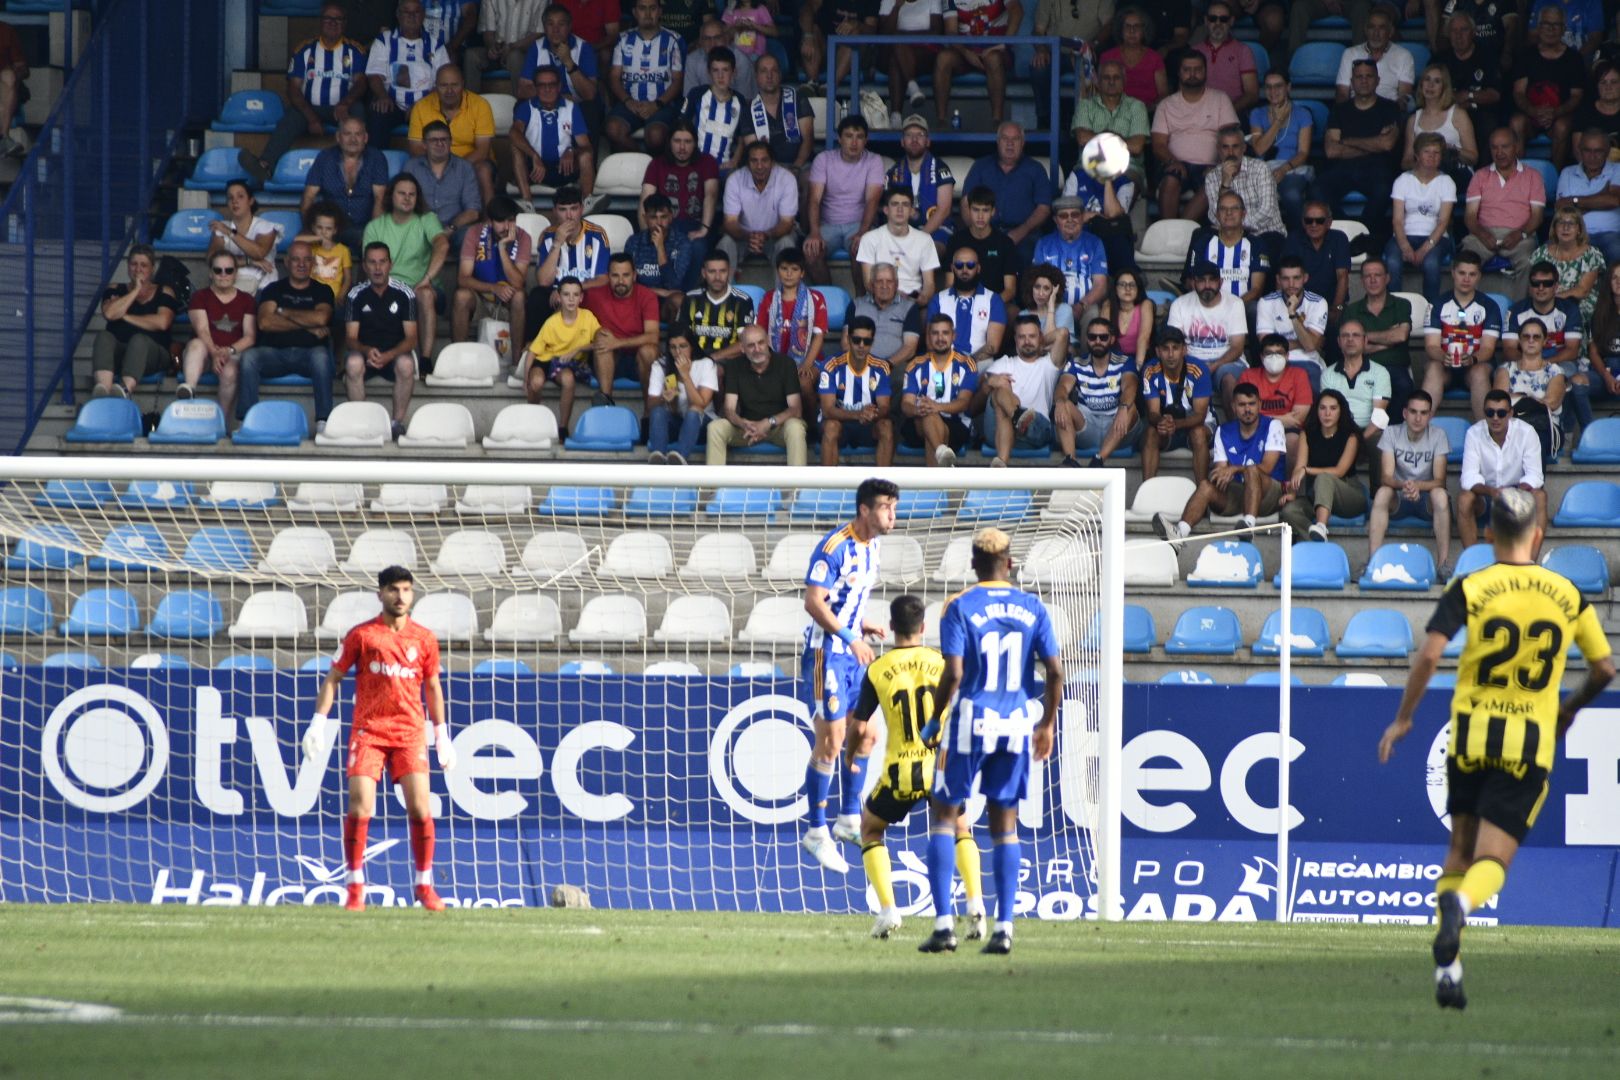 Ponferradina - Real Zaragoza 